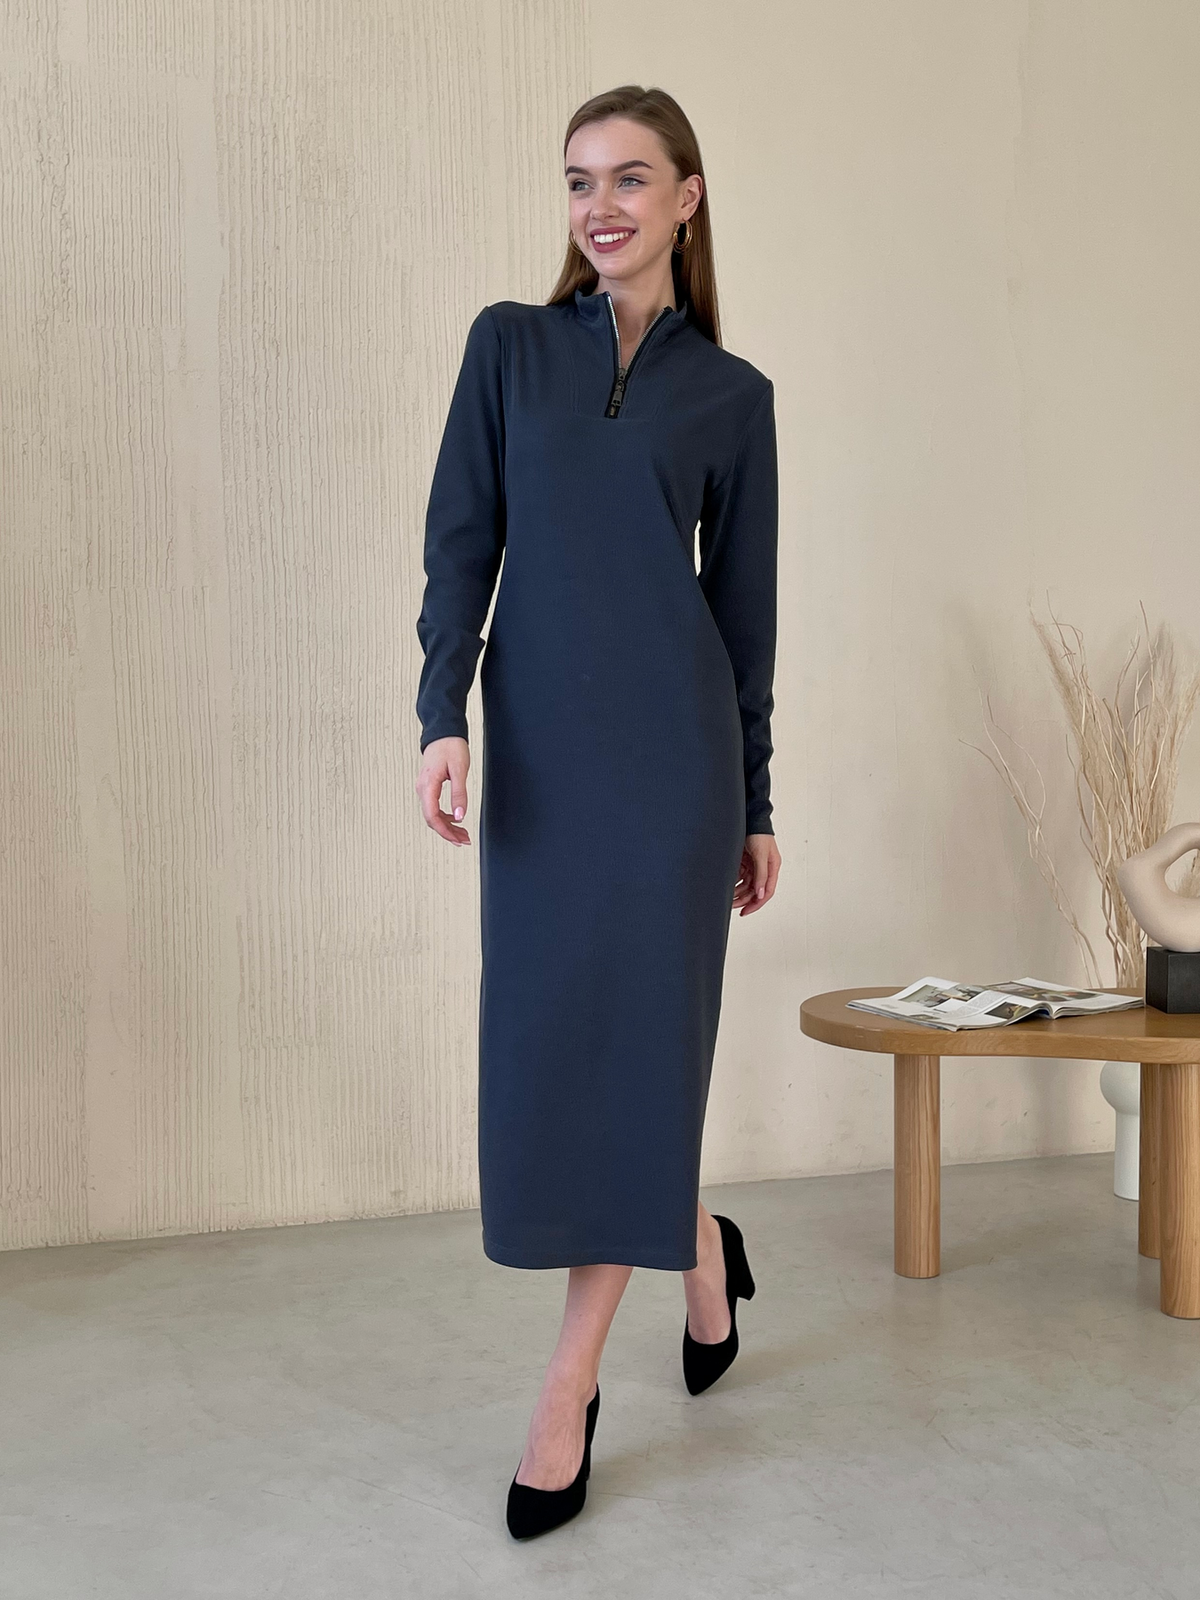 Купить Длинное серое платье в рубчик с длинным рукавом Merlini Венето 700001142, размер 42-44 (S-M) в интернет-магазине